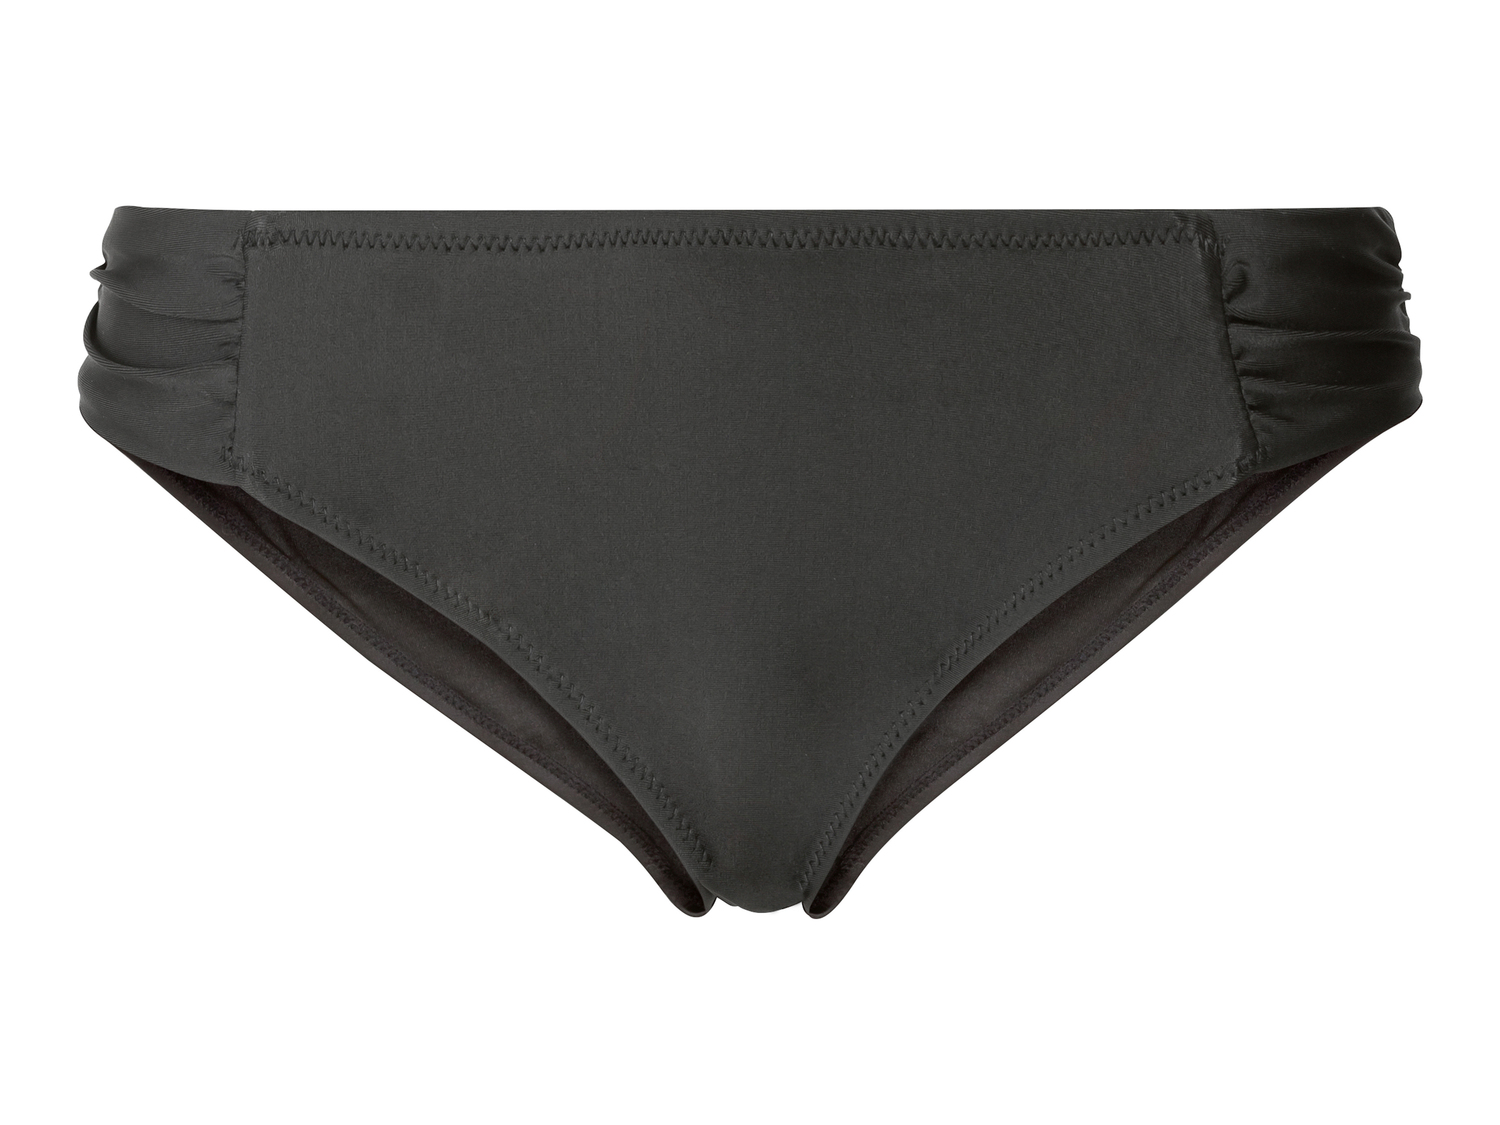 Slip-bikini da donna Esmara, prezzo 3.99 € 
Misure: 38-44
Taglie disponibili

Caratteristiche

- ...